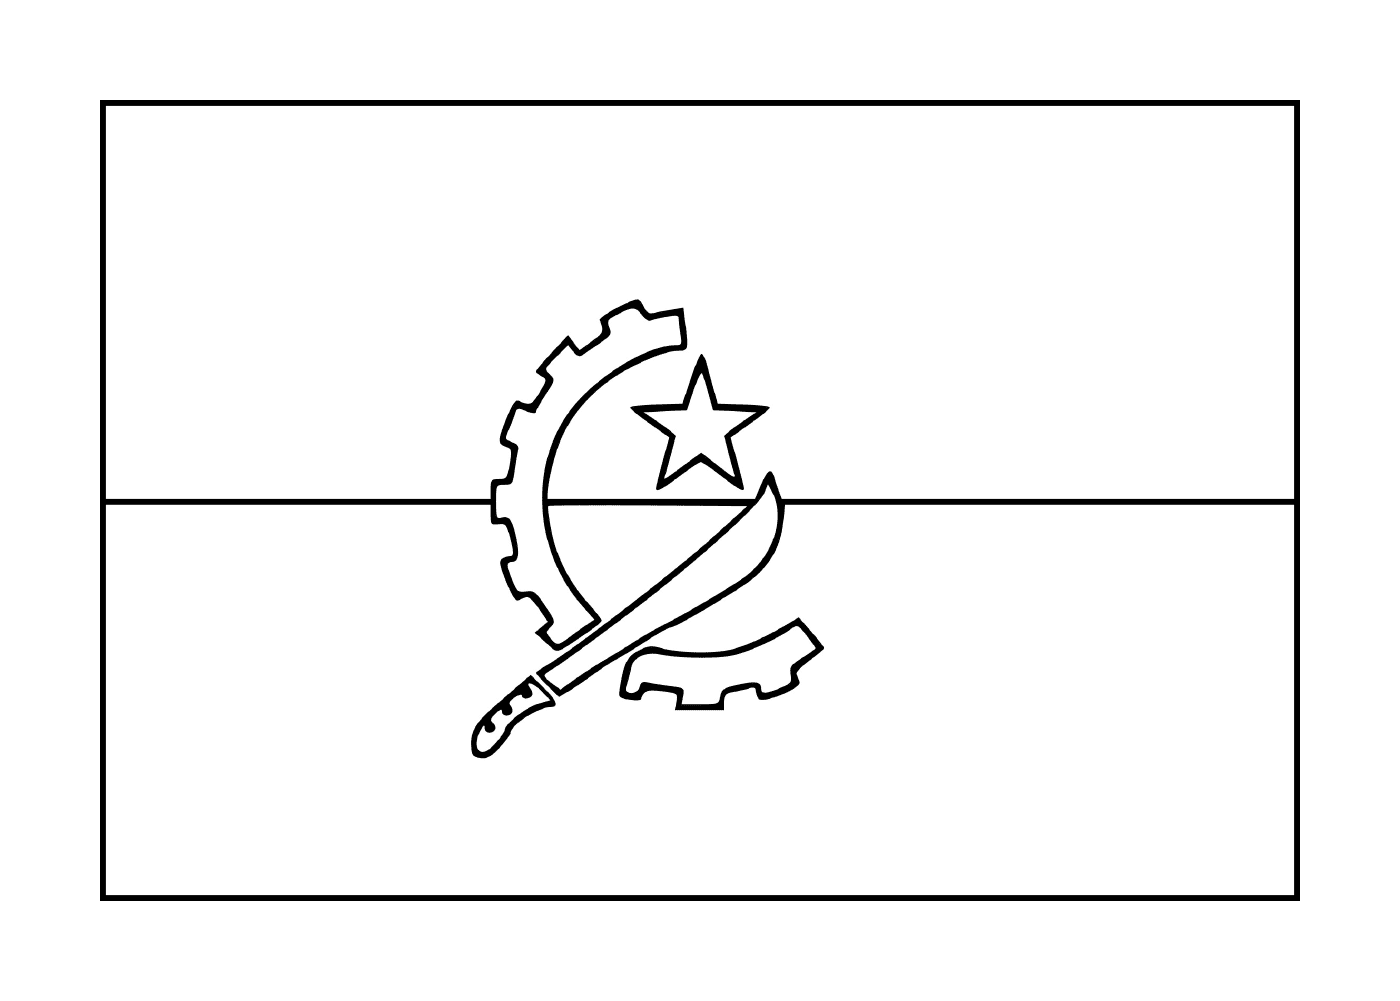  अंगोला का ध्वज 